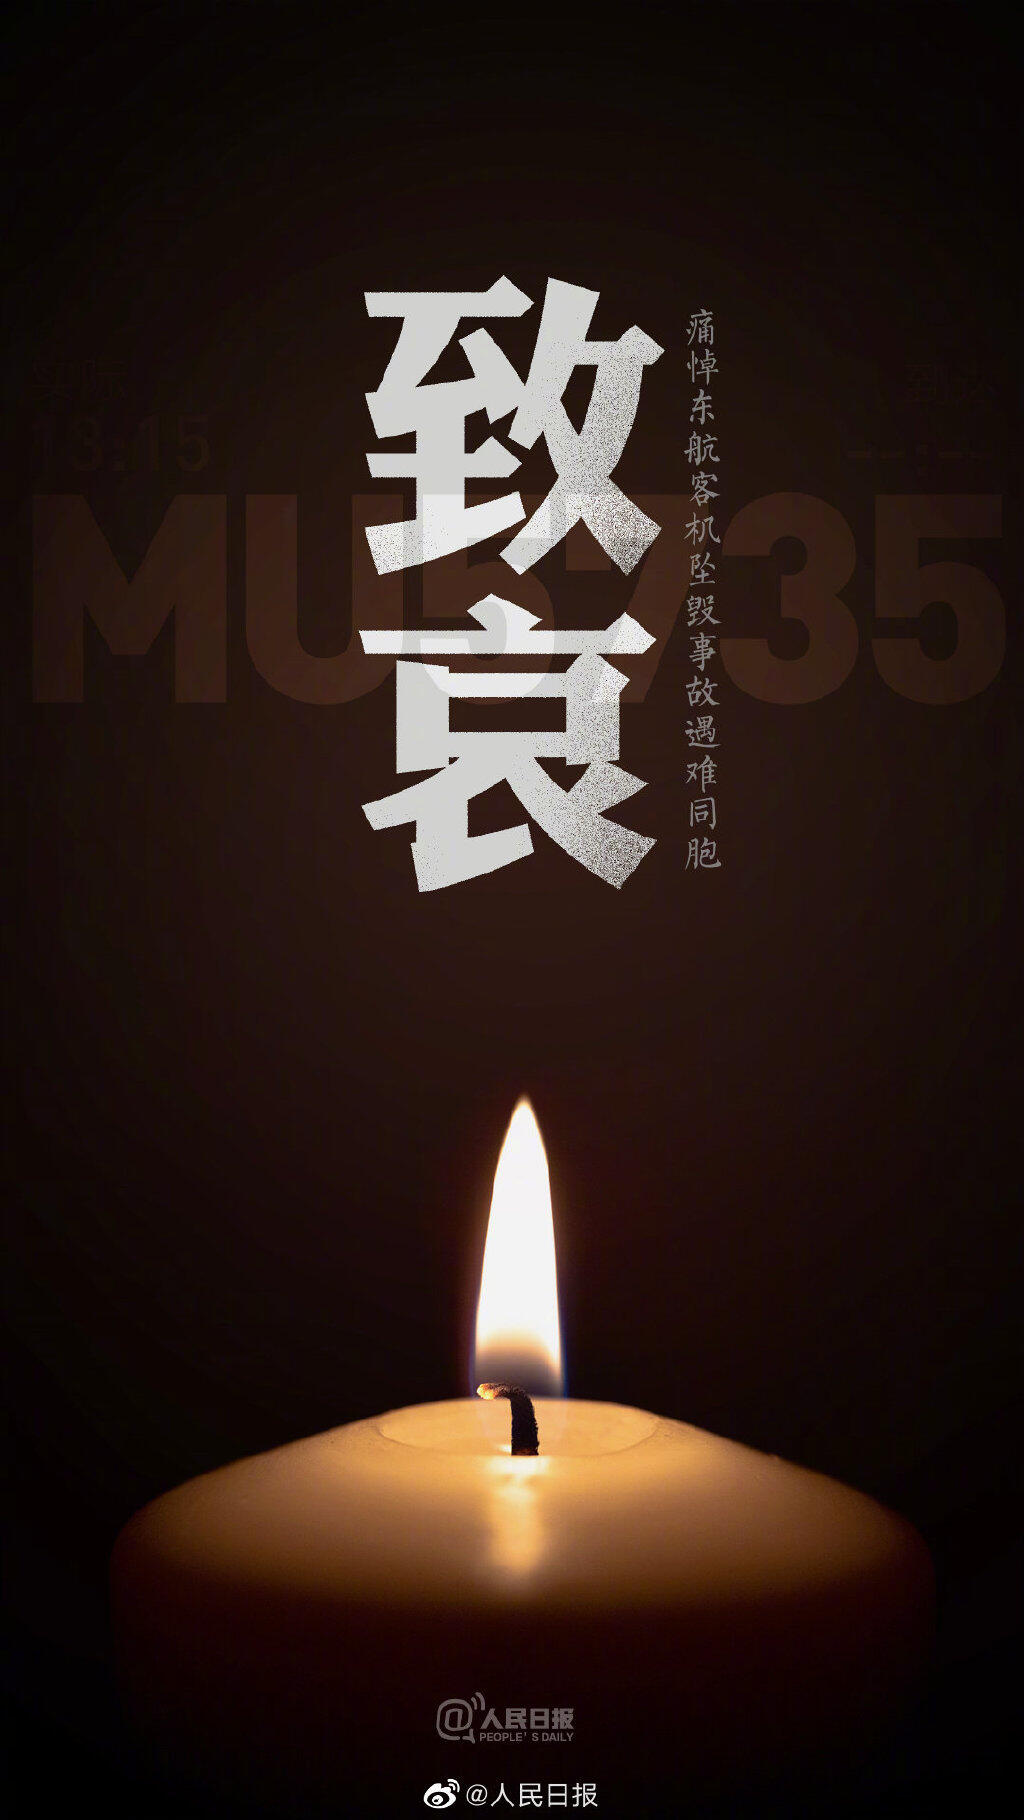 MU5735航班上人员已全部遇难 为东航飞行事故遇难者默哀